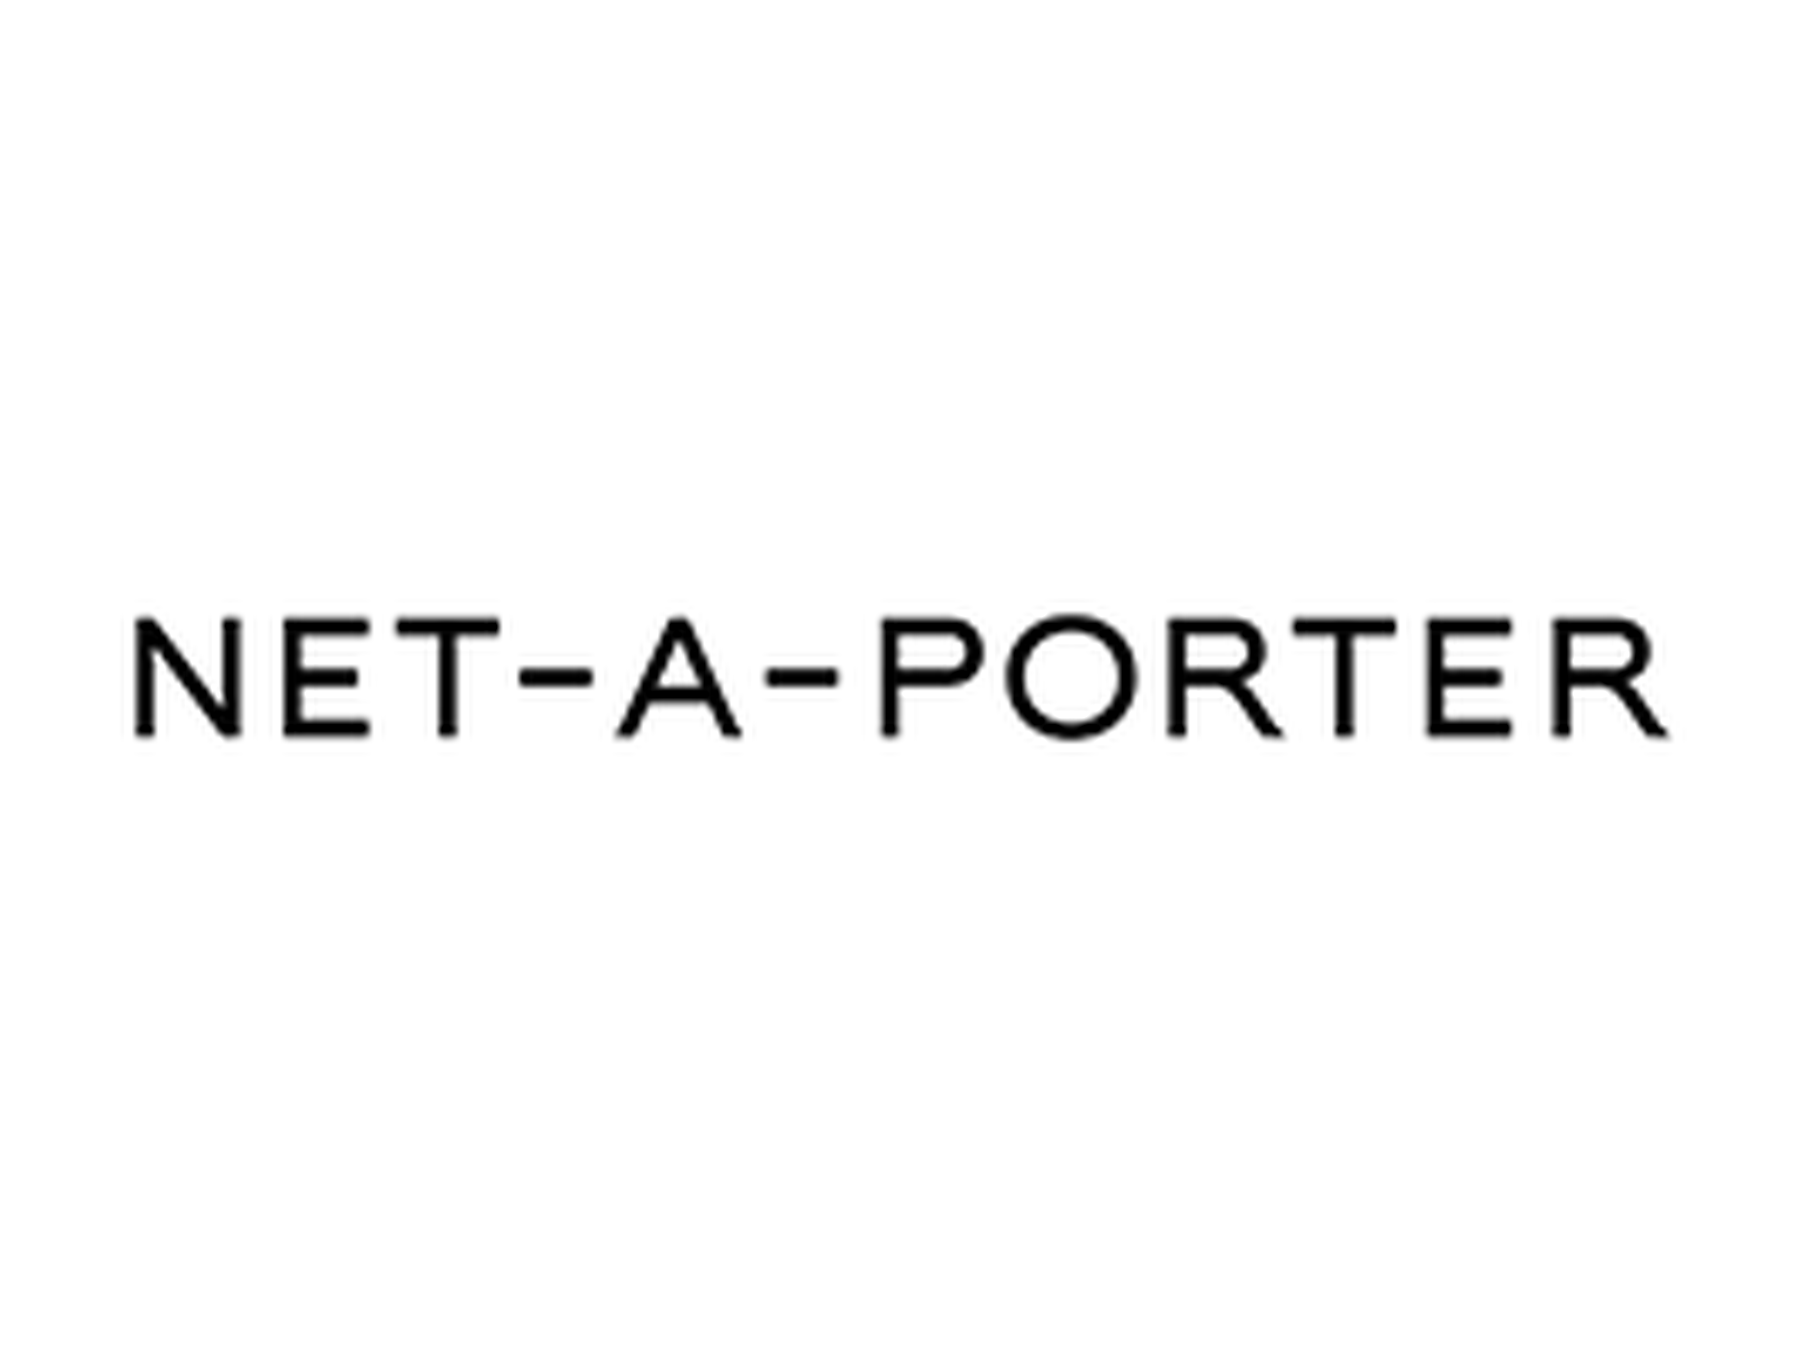 NET-A-PORTER Discount Code